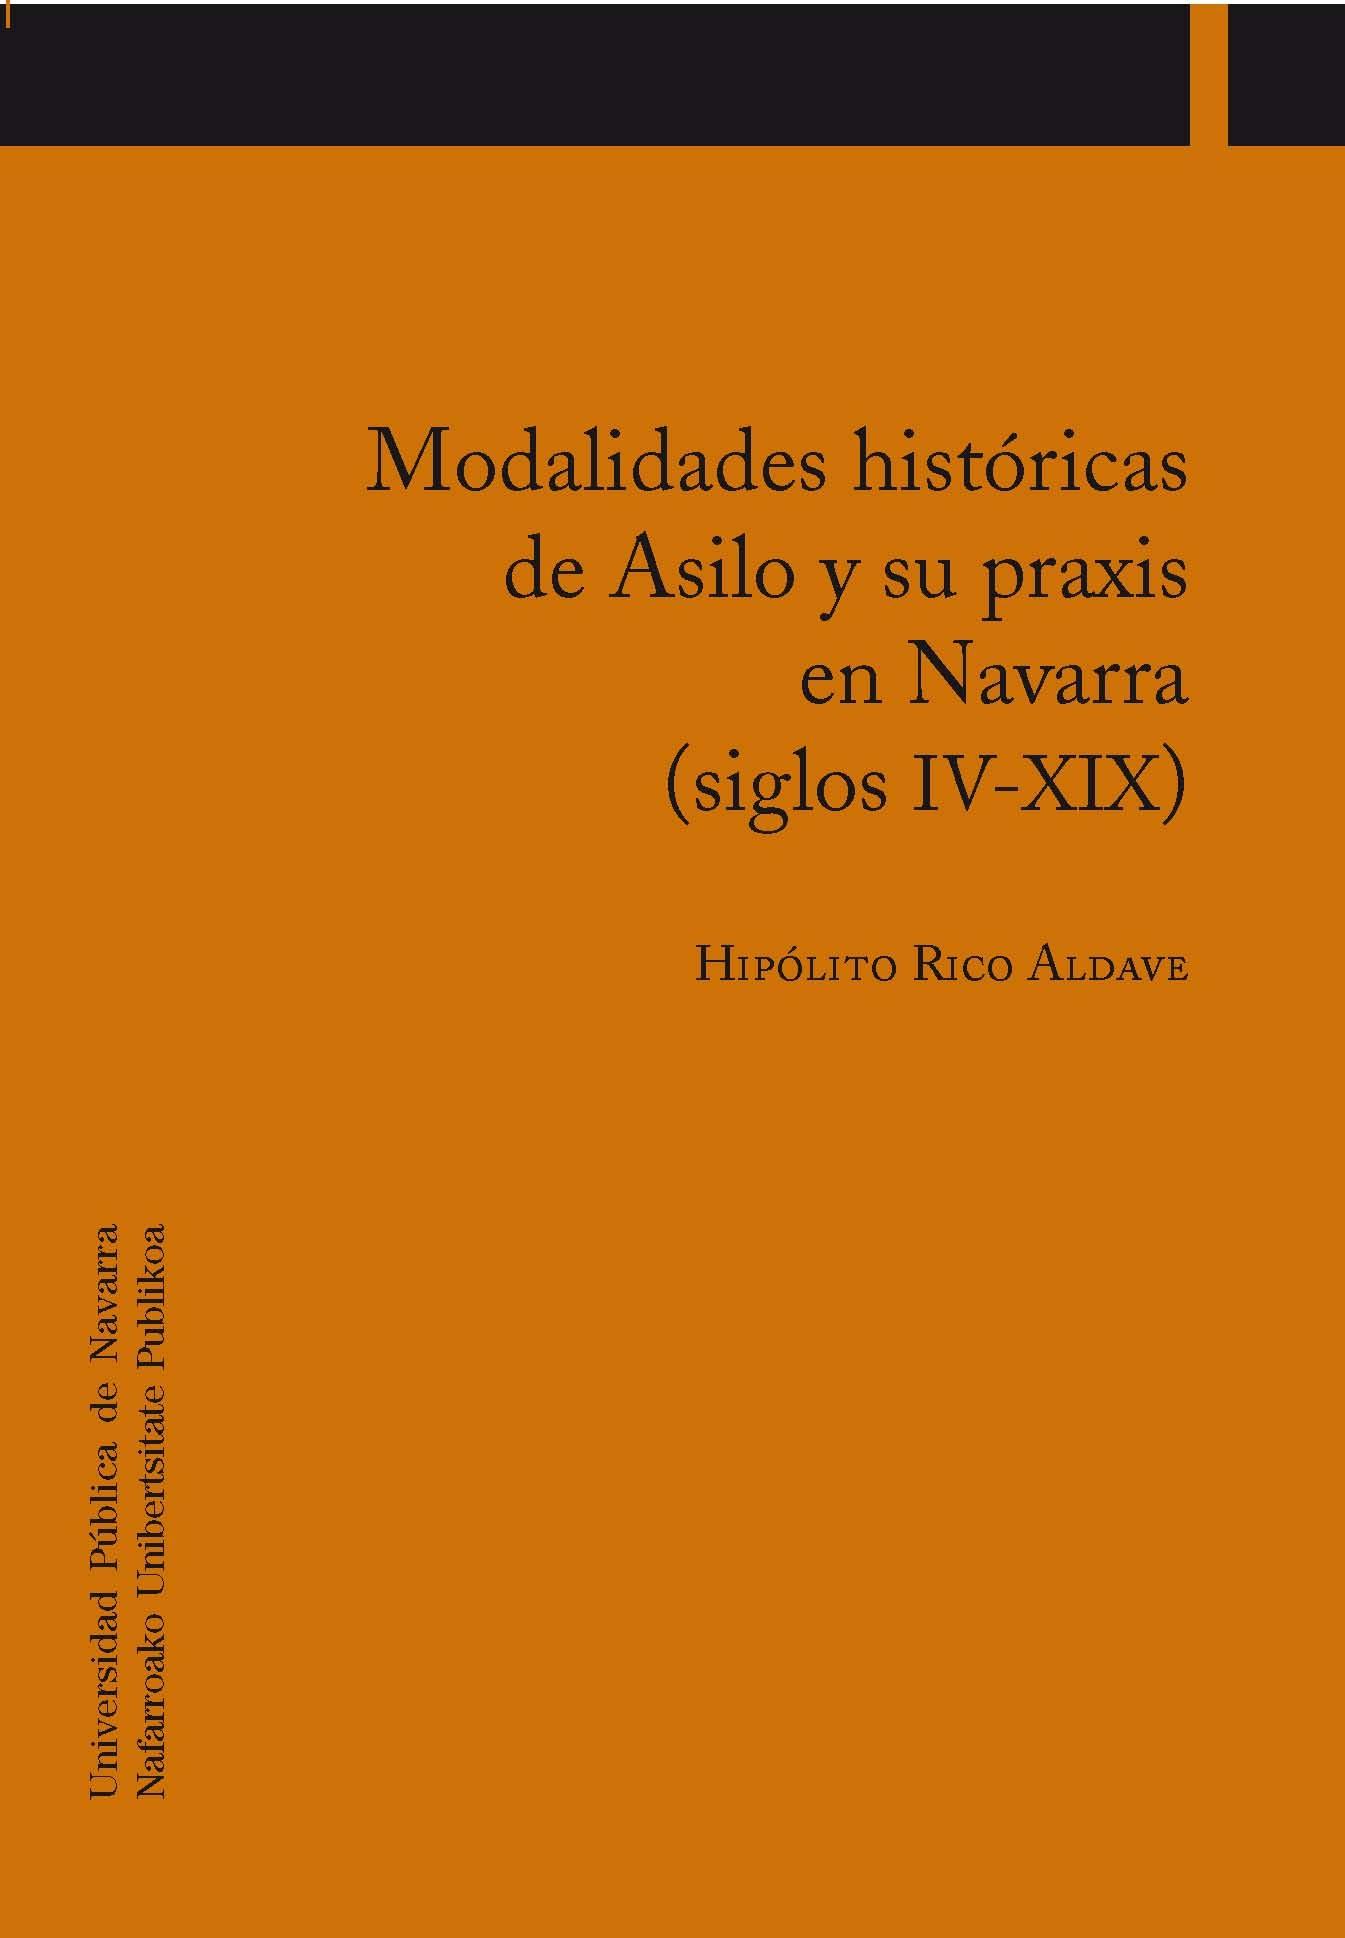 Modalidades históricas de Asilo y su praxis en Navarra (siglos IV-XIX) "SIGLOS IV-XIX"